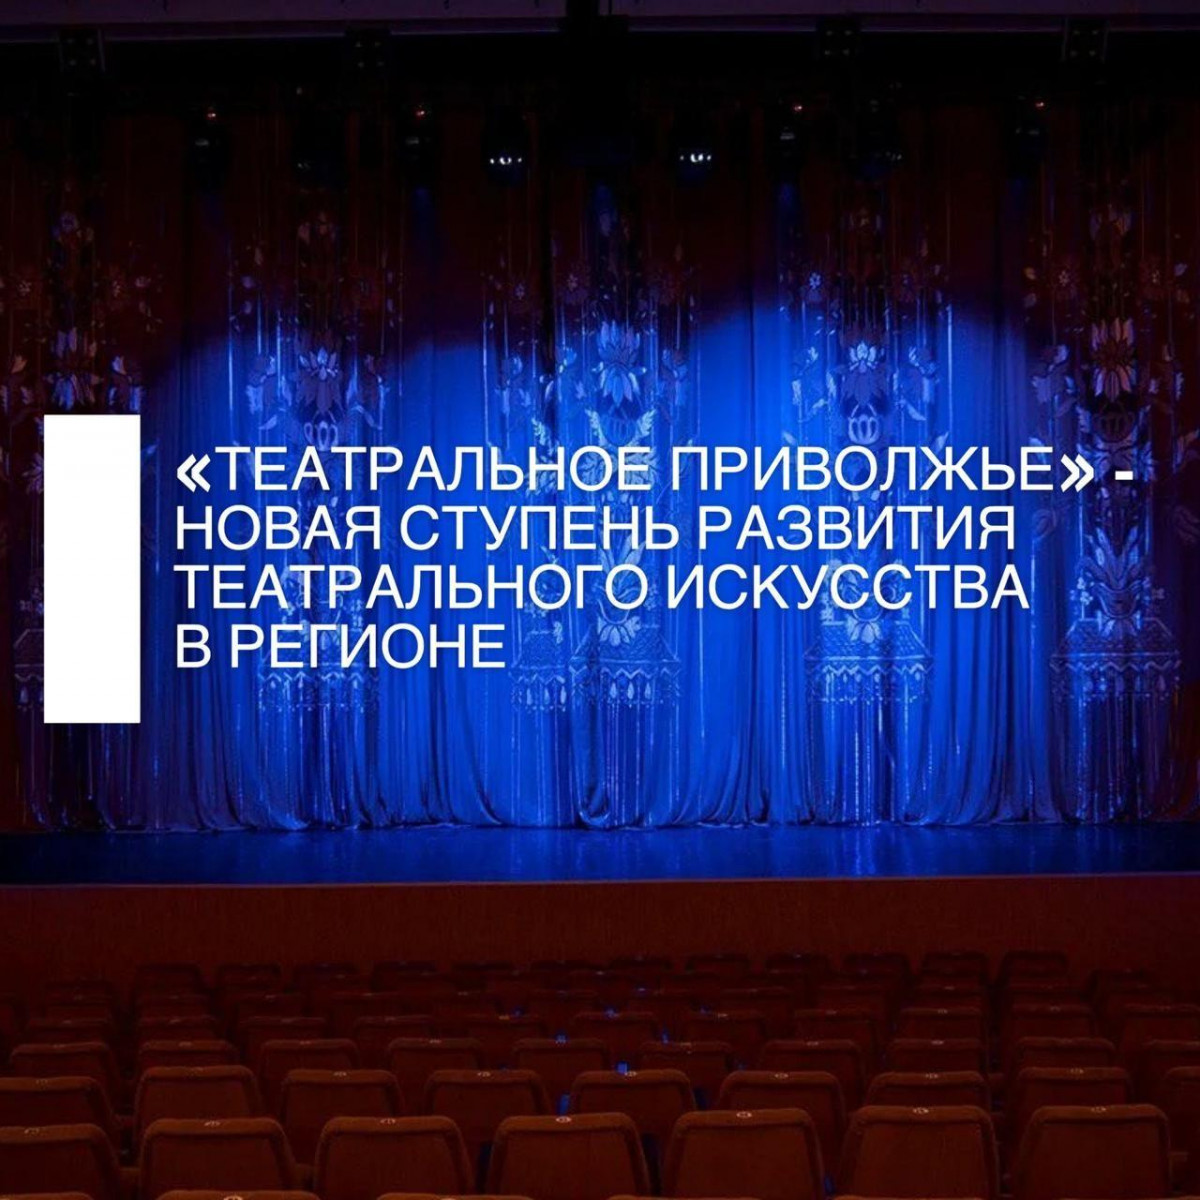 Участников «Театрального Приволжья» ждет онлайн-программа от ведущих театральных деятелей